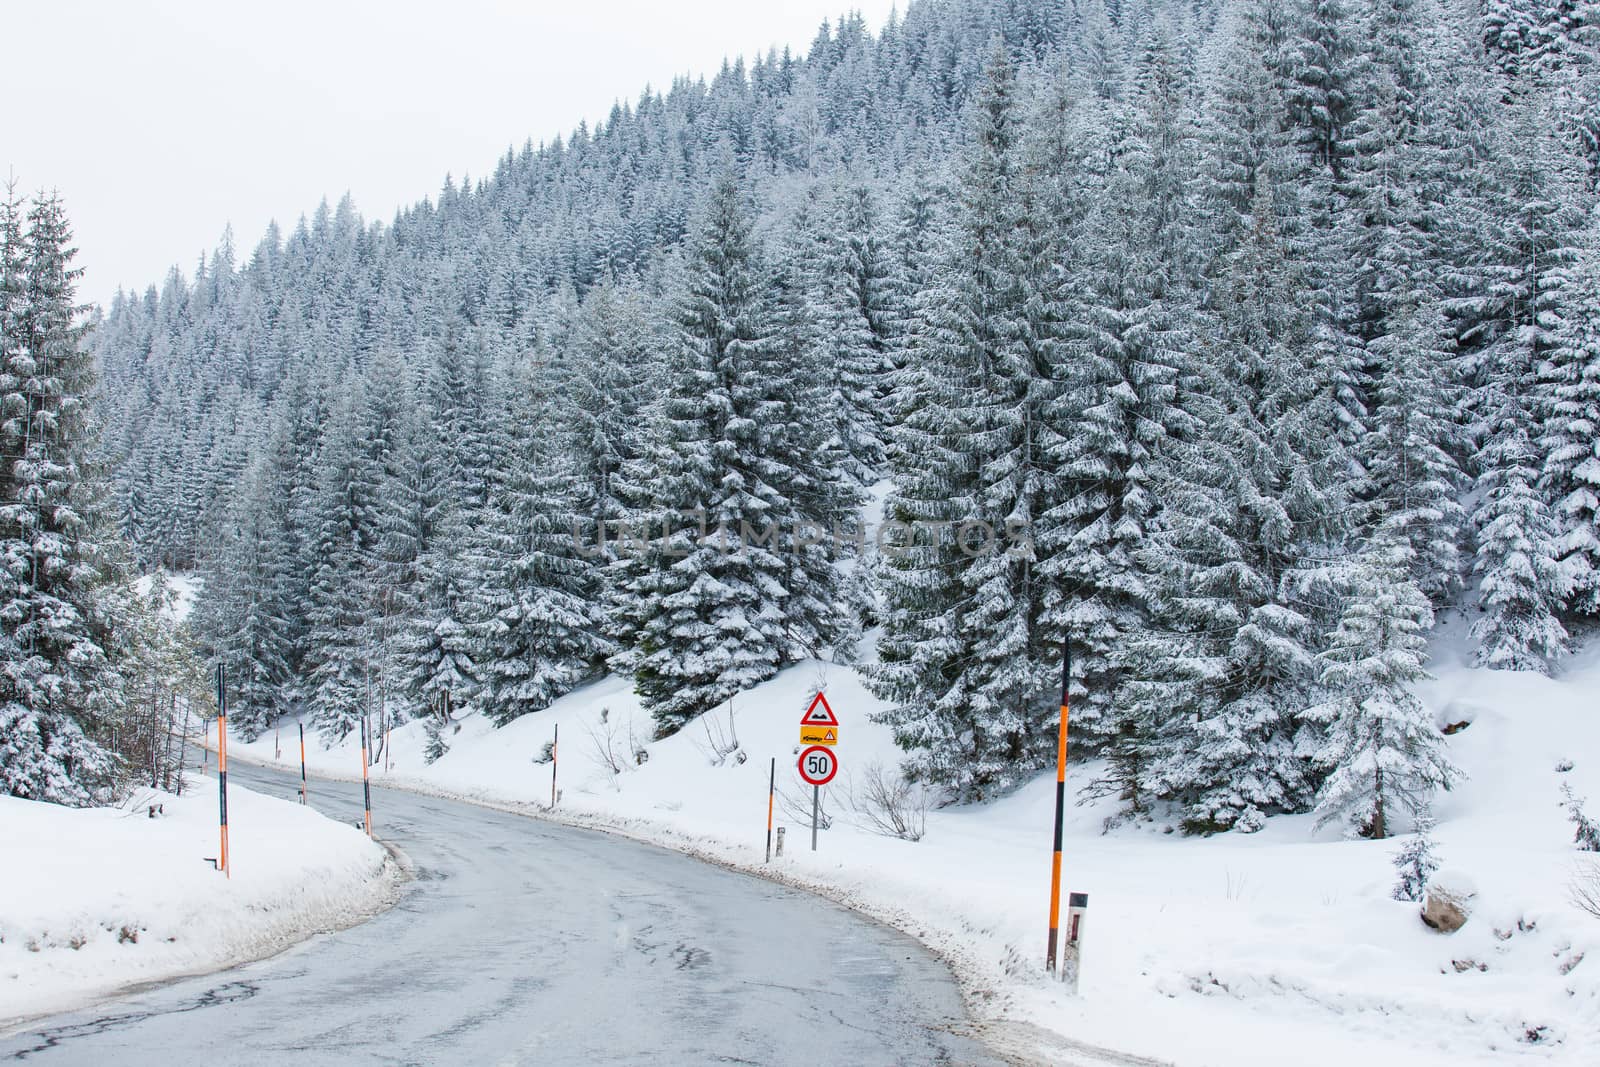 Road through snowy mountains by maxoliki